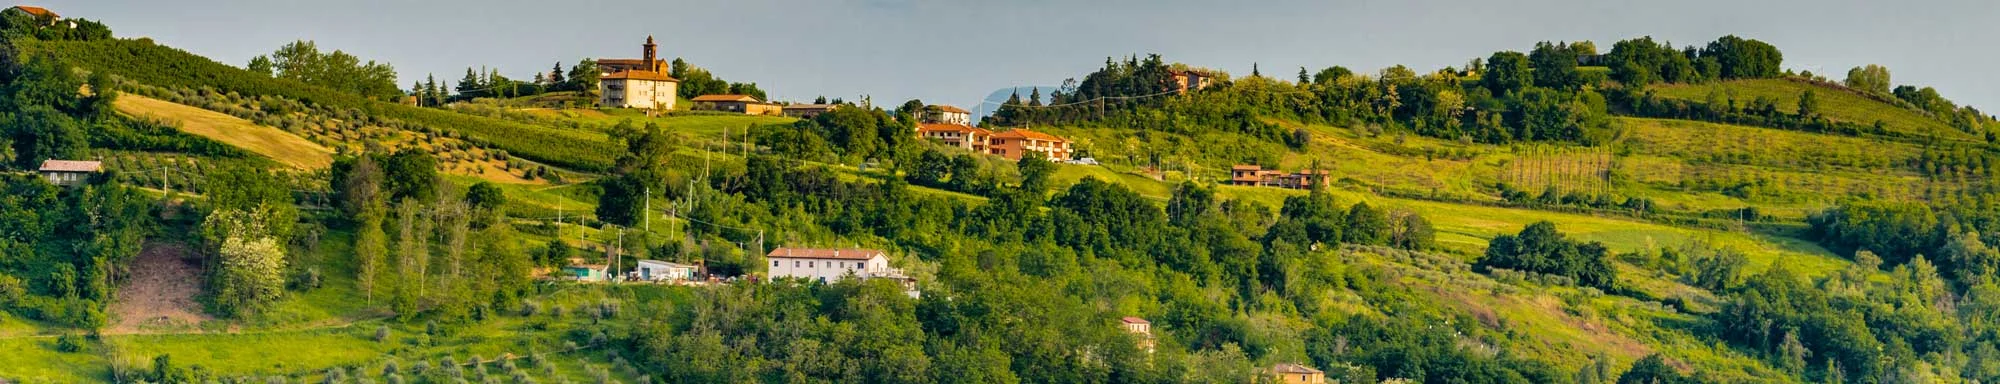 Anbaugebiet Emilia-Romagna